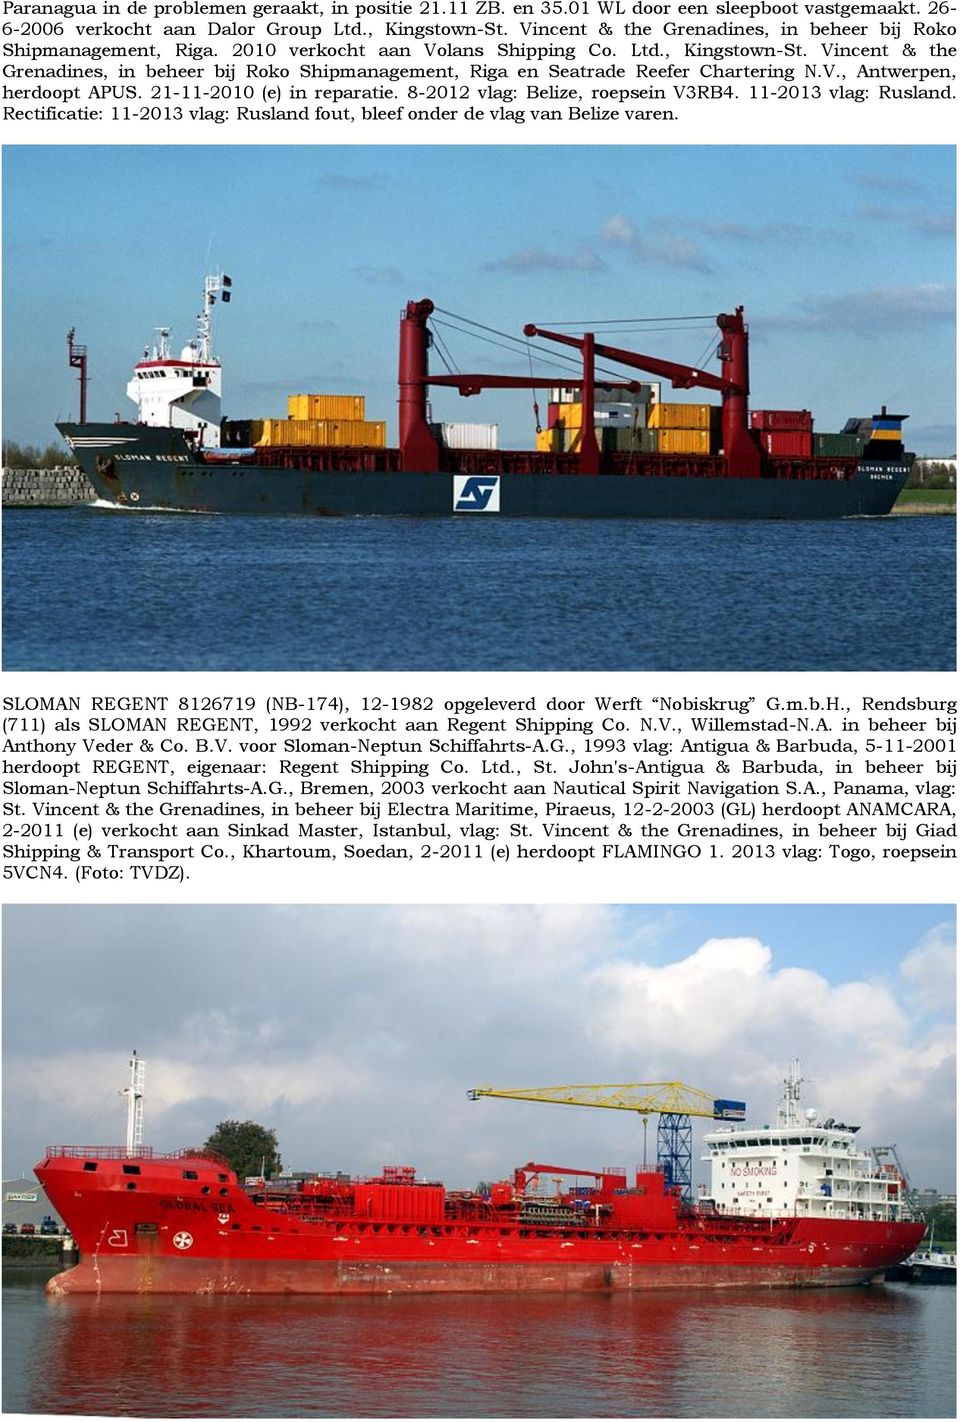 Vincent & the Grenadines, in beheer bij Roko Shipmanagement, Riga en Seatrade Reefer Chartering N.V., Antwerpen, herdoopt APUS. 21-11-2010 (e) in reparatie. 8-2012 vlag: Belize, roepsein V3RB4.